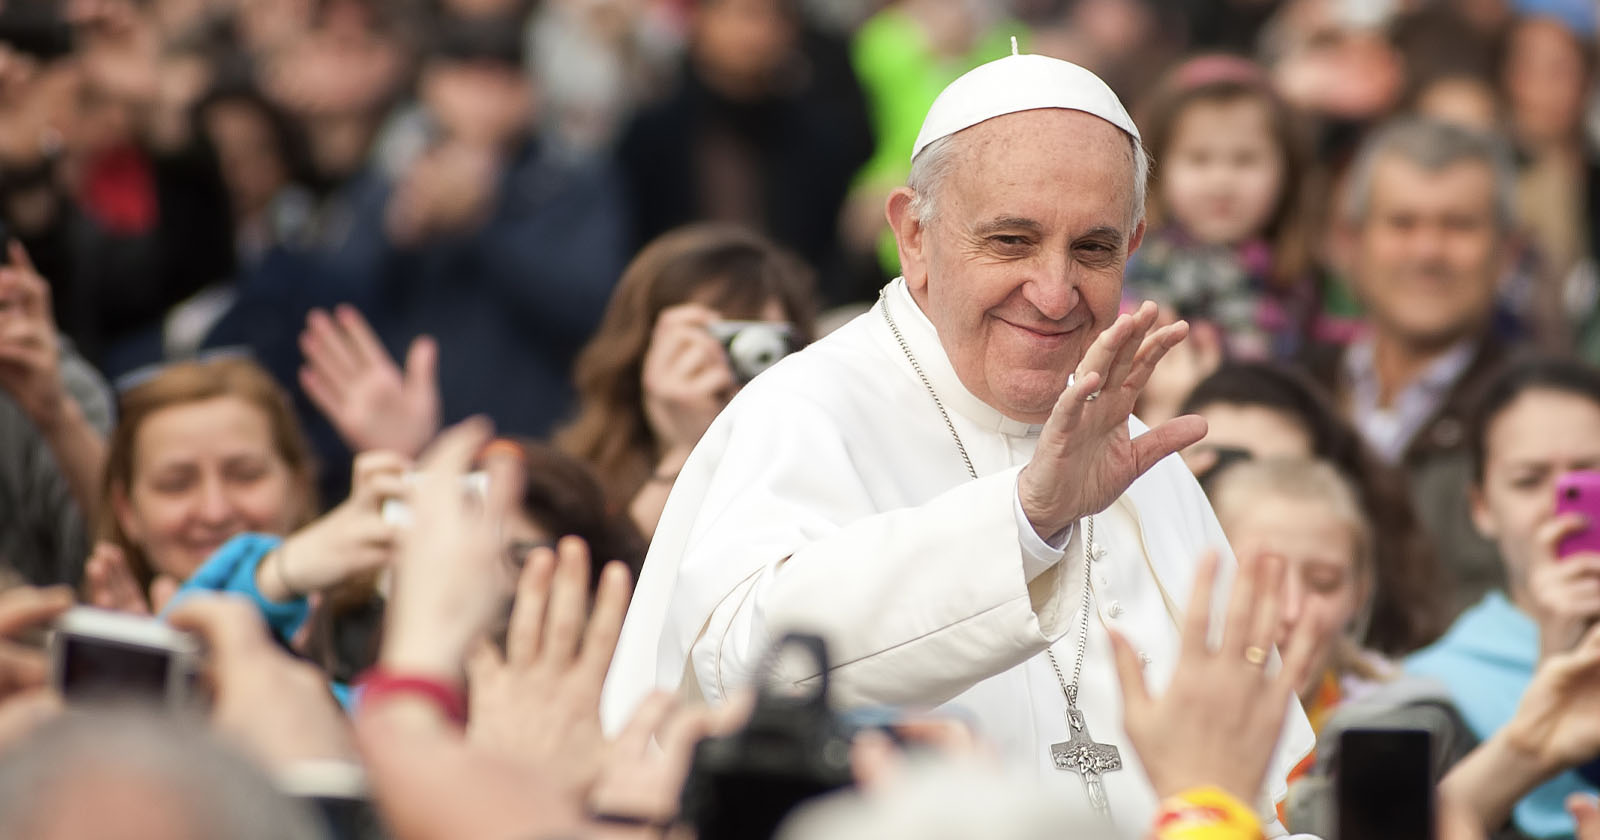  pope francis warns dangers calls 